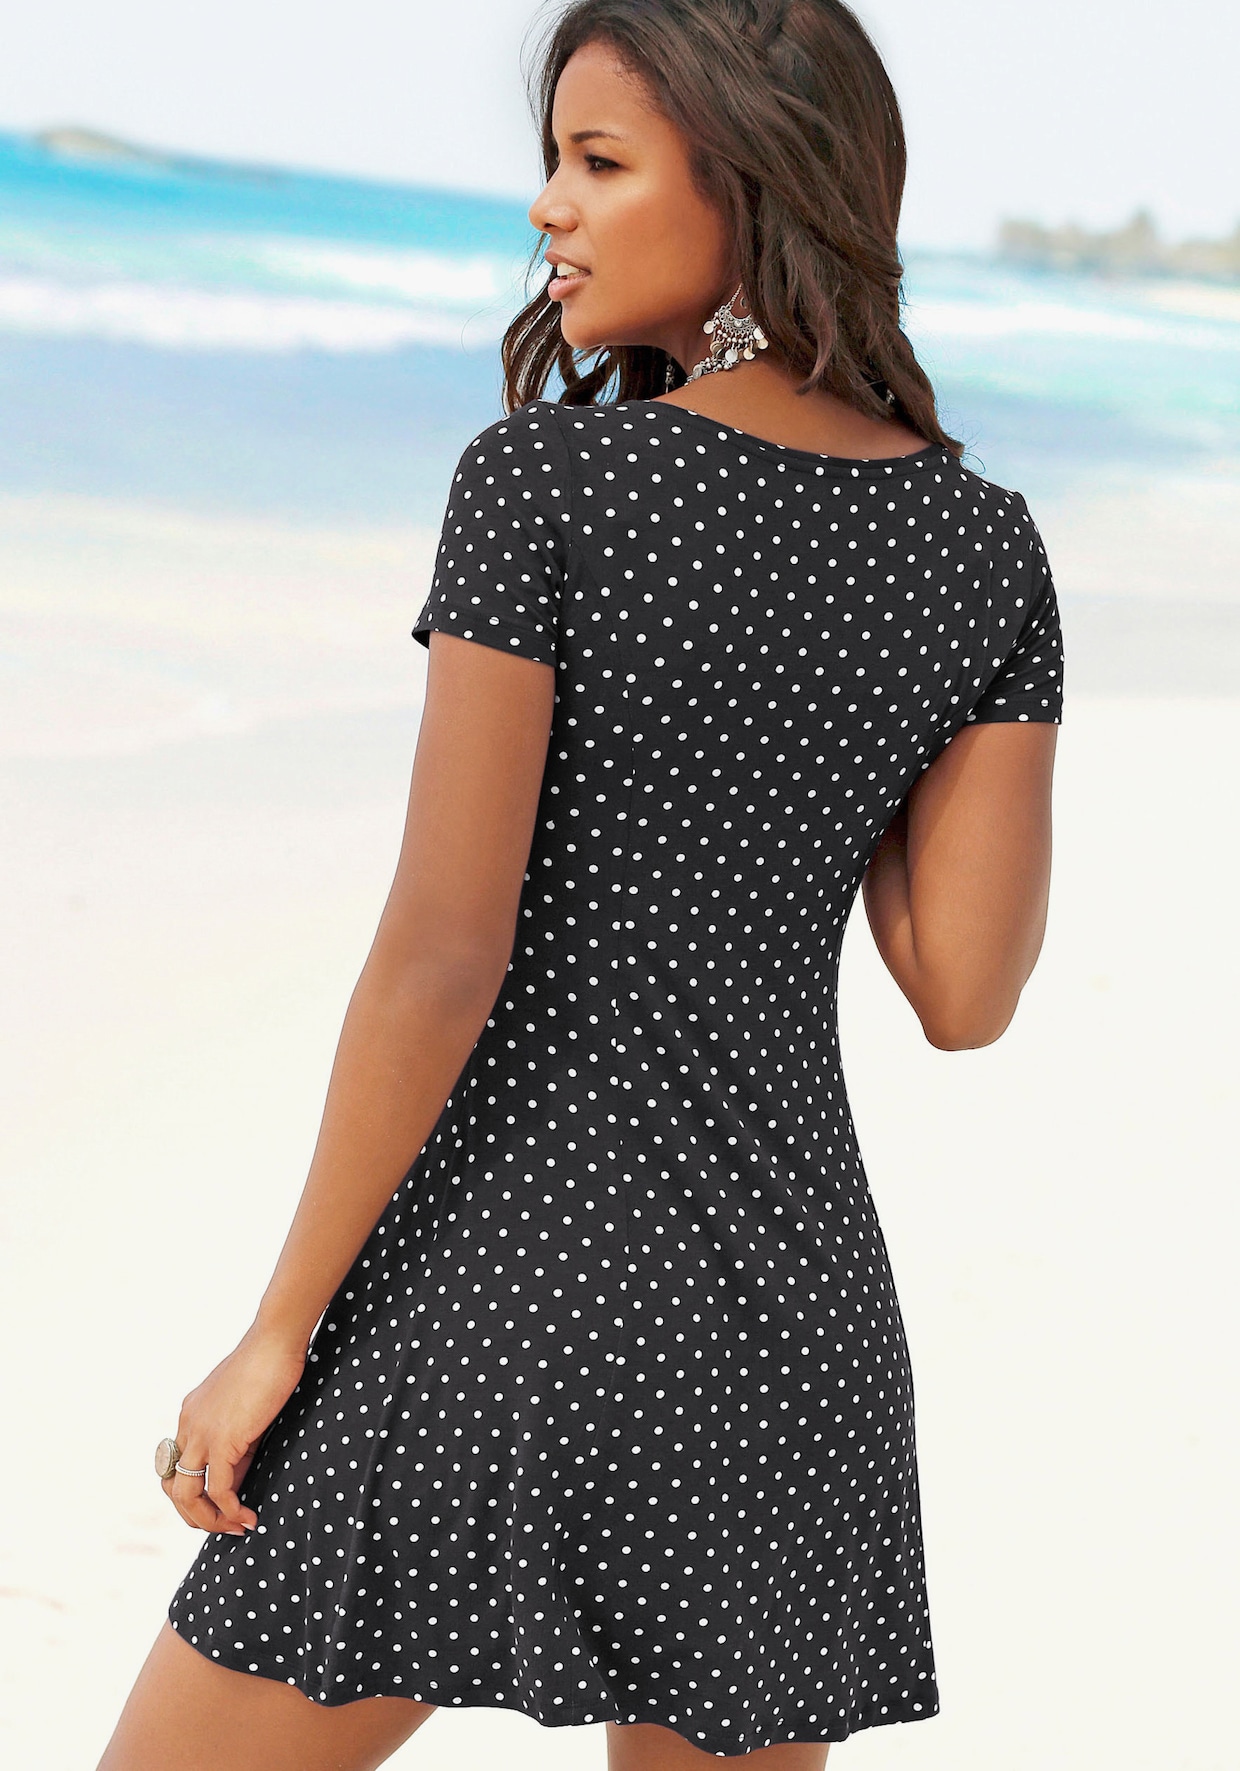 Beachtime Sommerkleid - schwarz-weiss-gepunktet